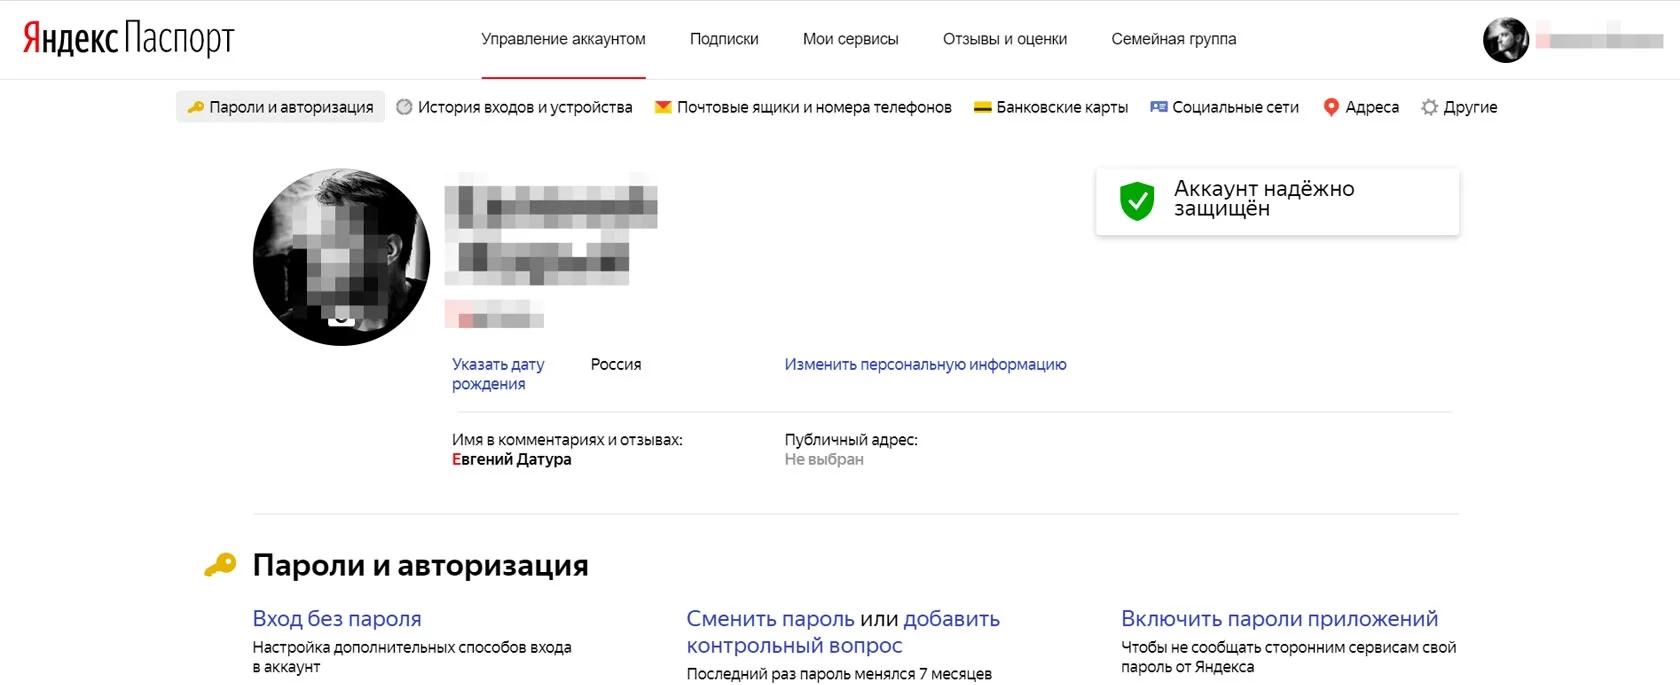 Яндекс справочник вход в личный кабинет